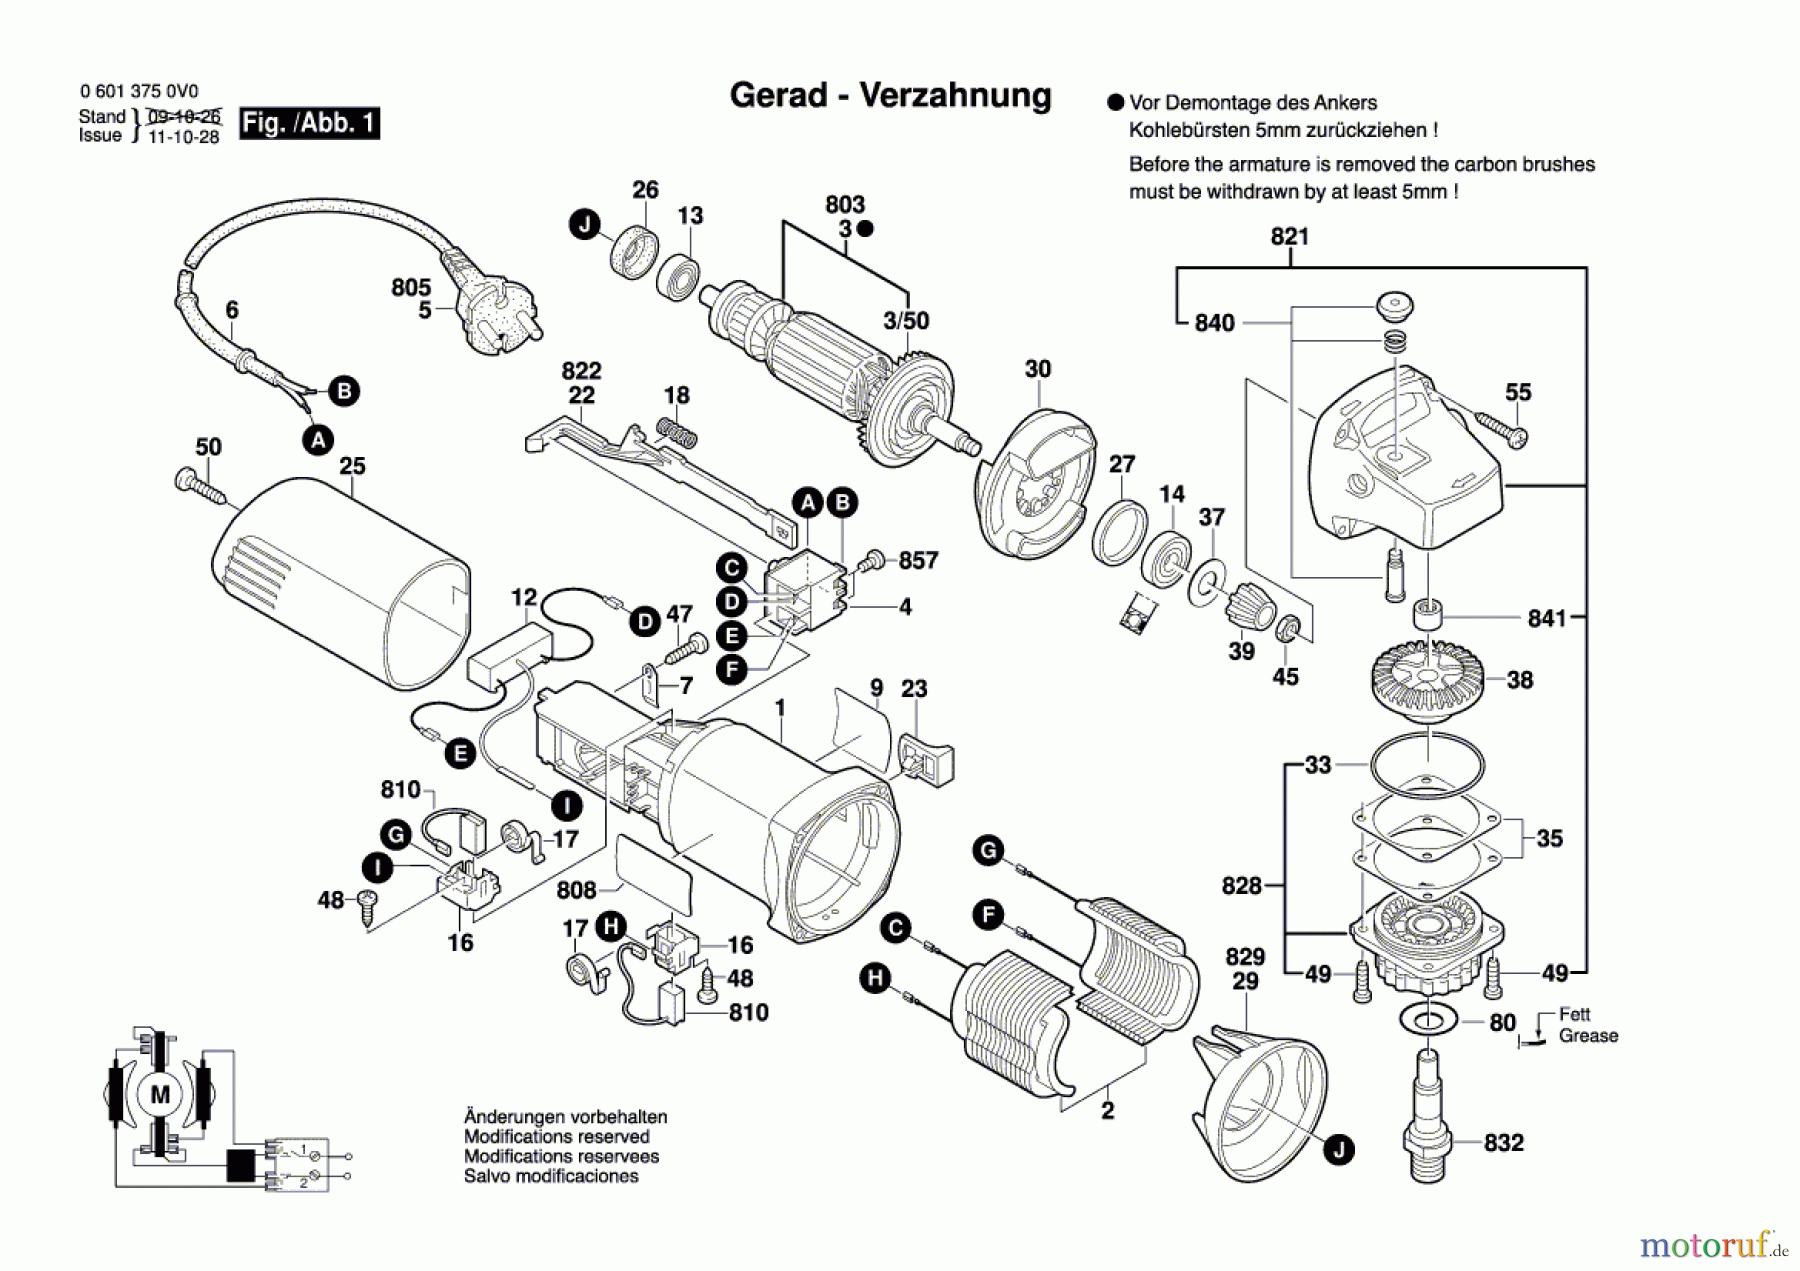  Bosch Werkzeug Winkelschleifer GWS 660 Seite 1